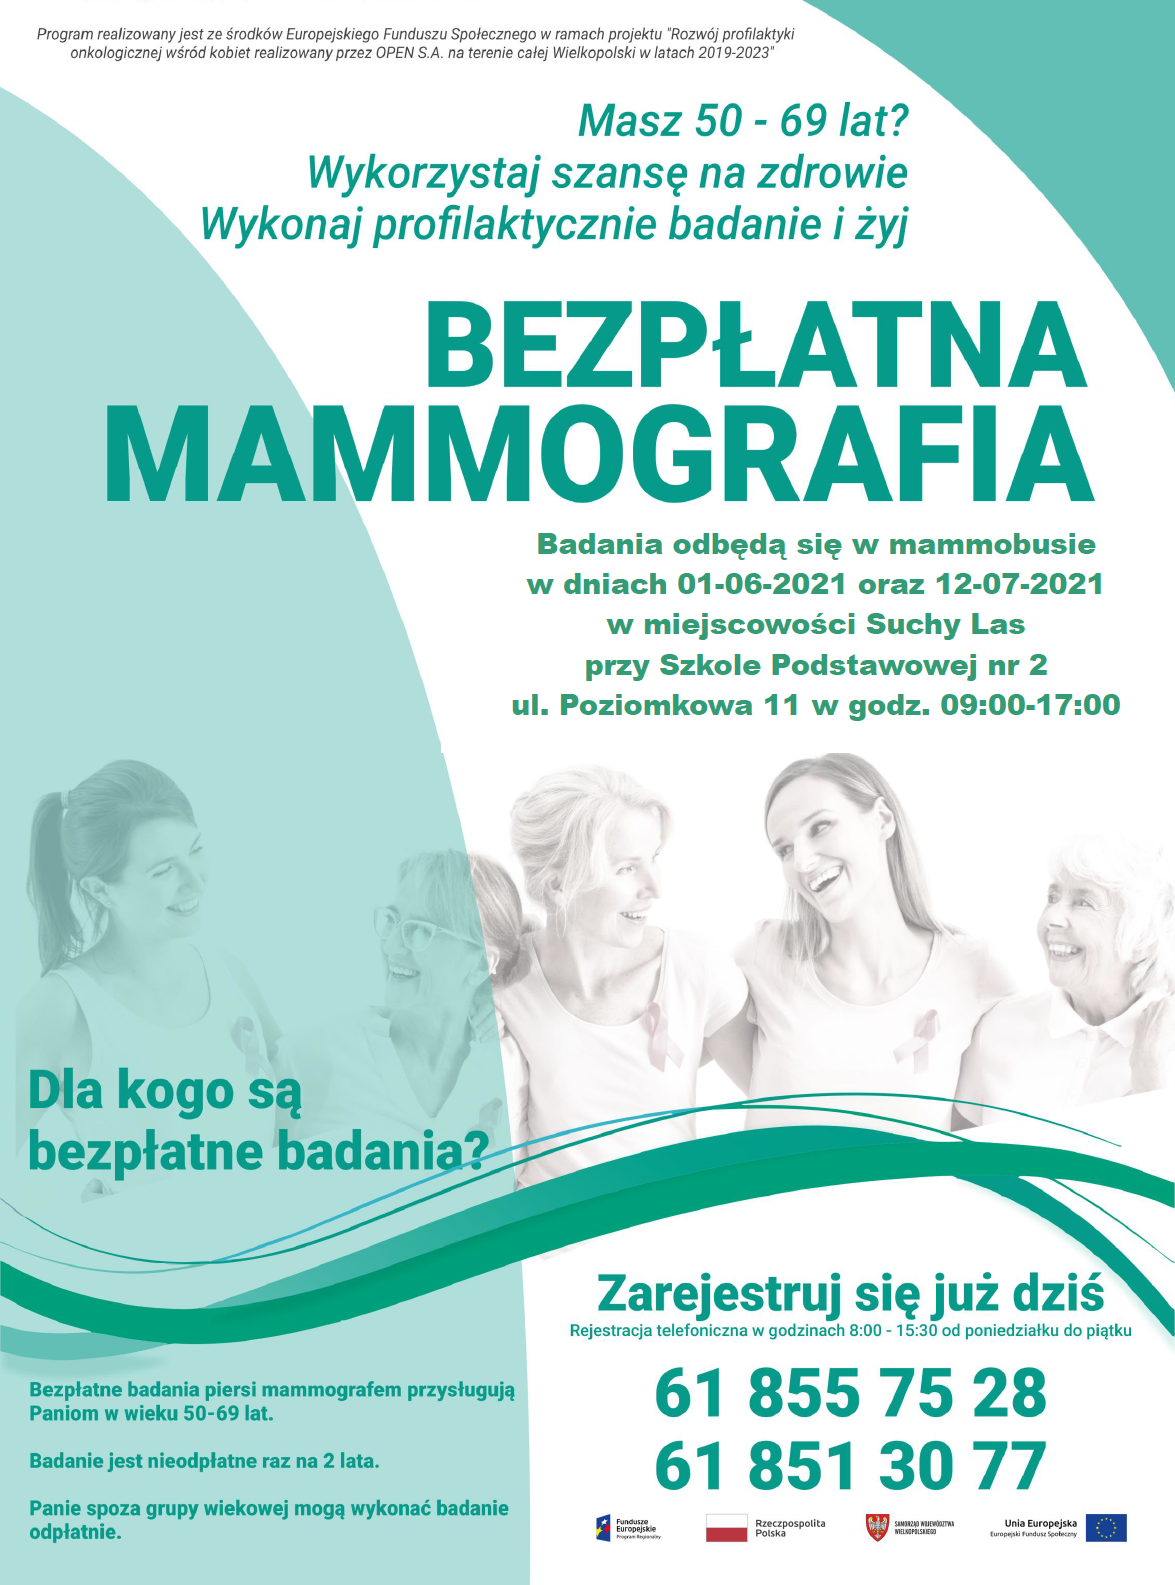 Plakat informujący o badaniach mammograficznych